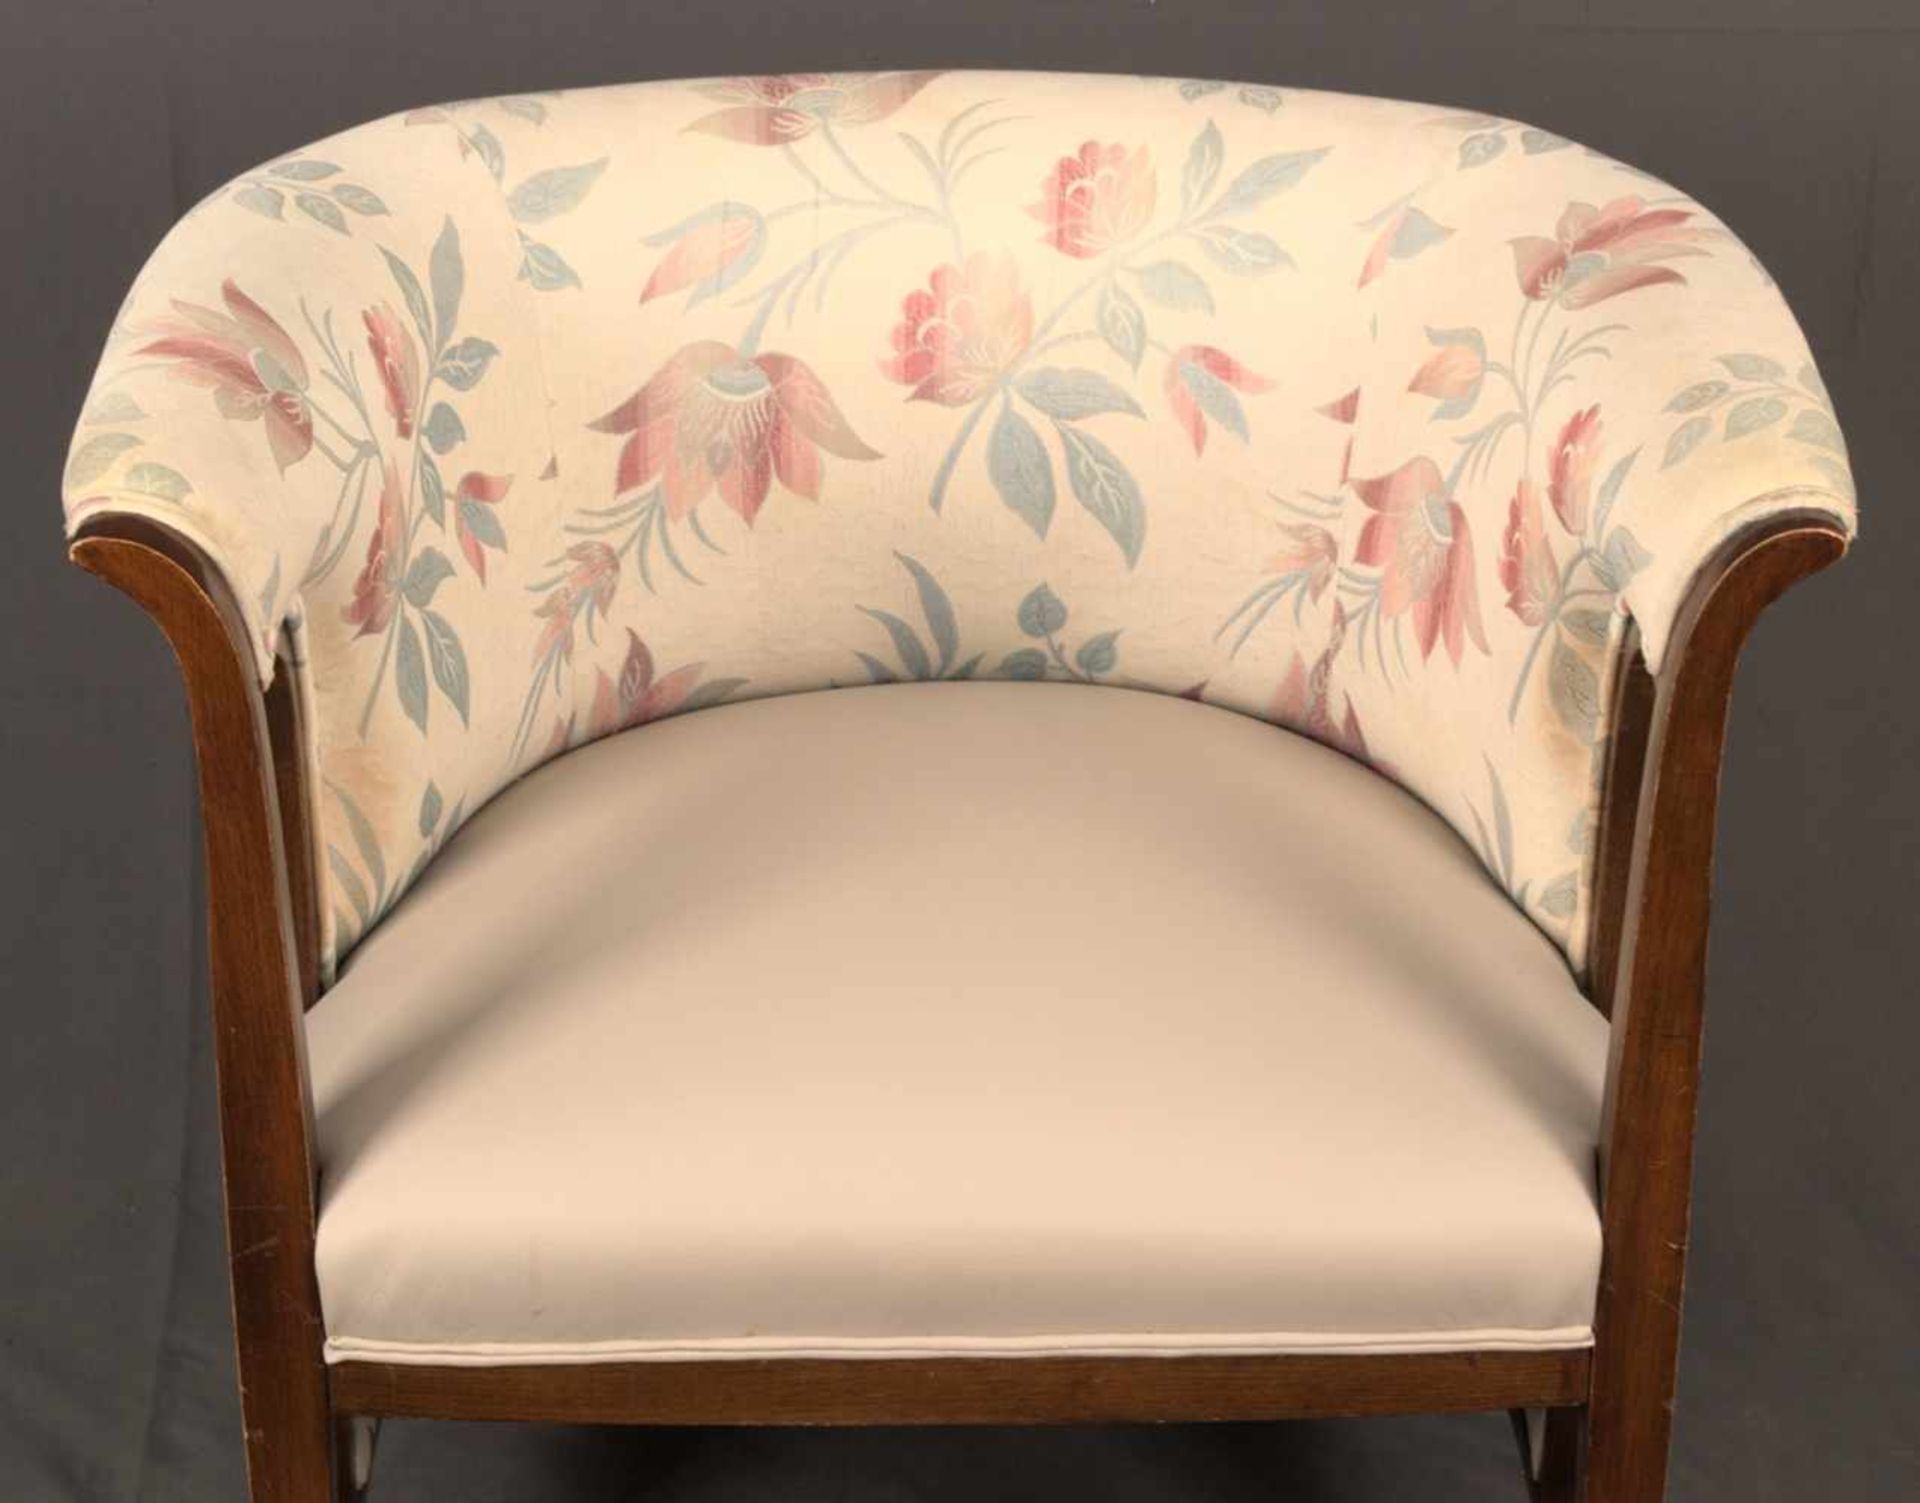 Wiener Polstersessel, hufeisenförmiges, gepolstertes Sesselgestell mit geraden, knatigen Beinen (die - Bild 19 aus 19